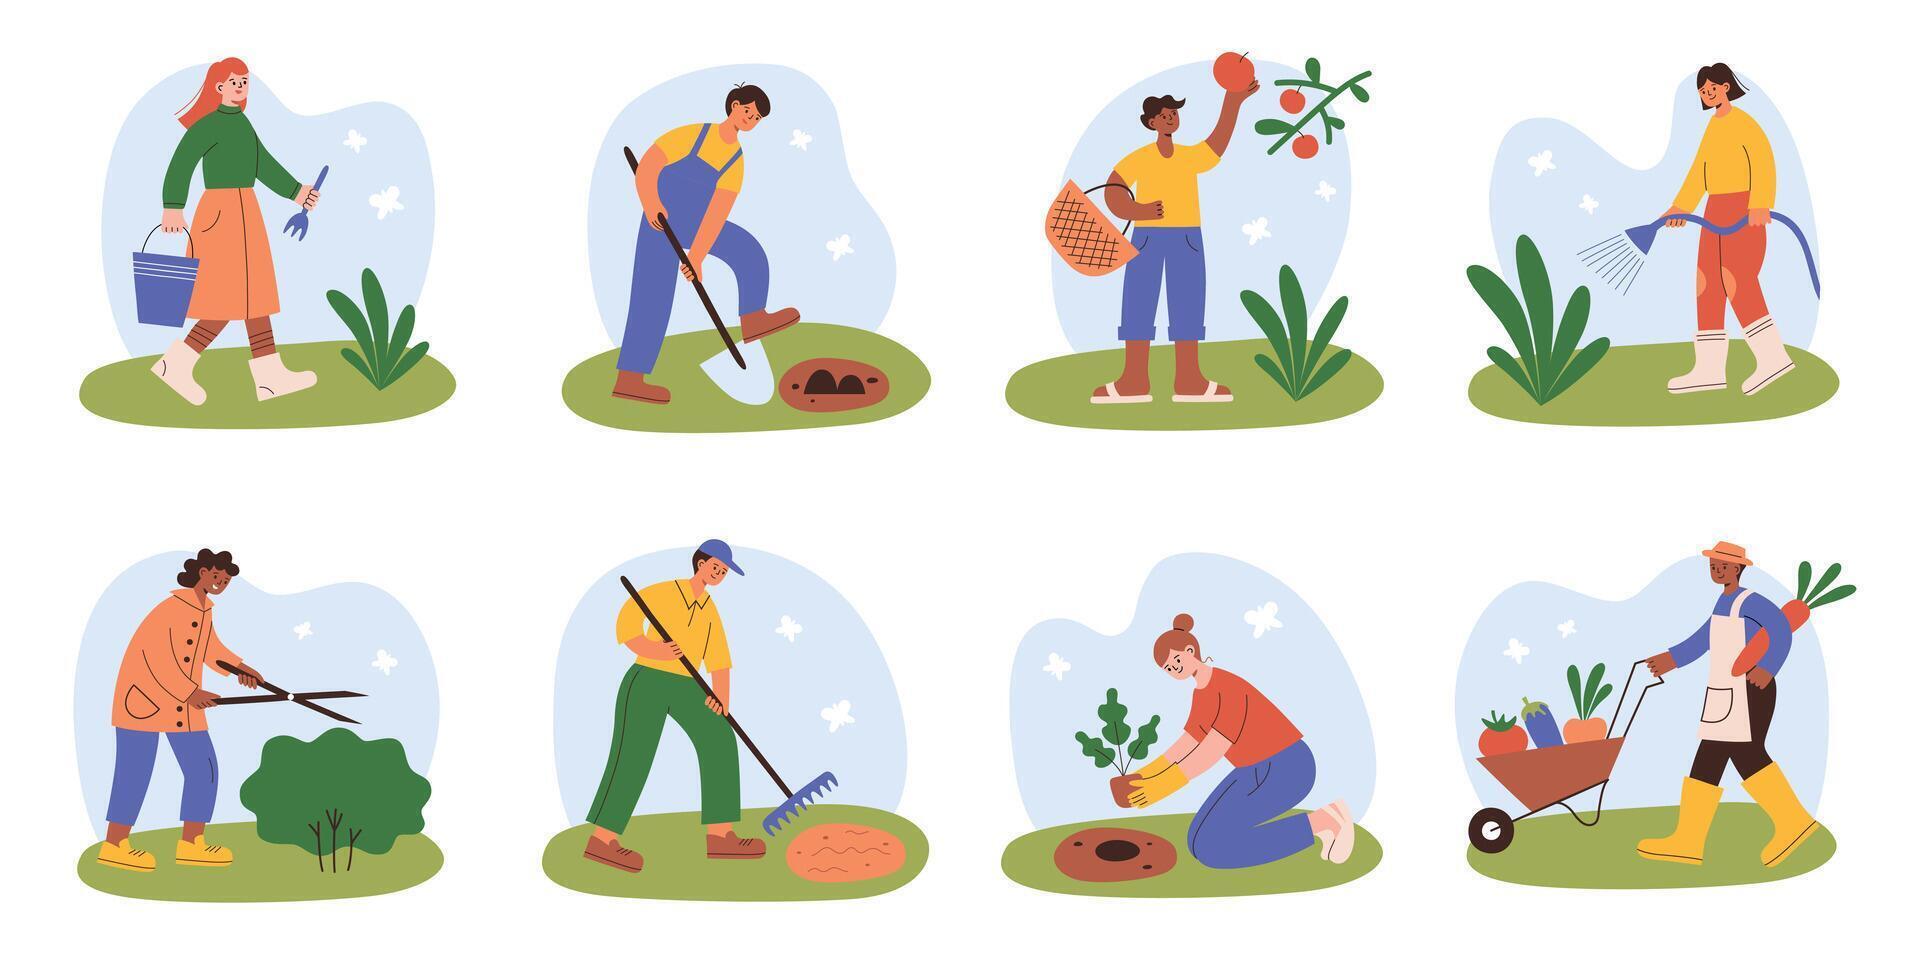 Cartoon characters working in garden, gardening and farming scenes, happy gardeners planting vector